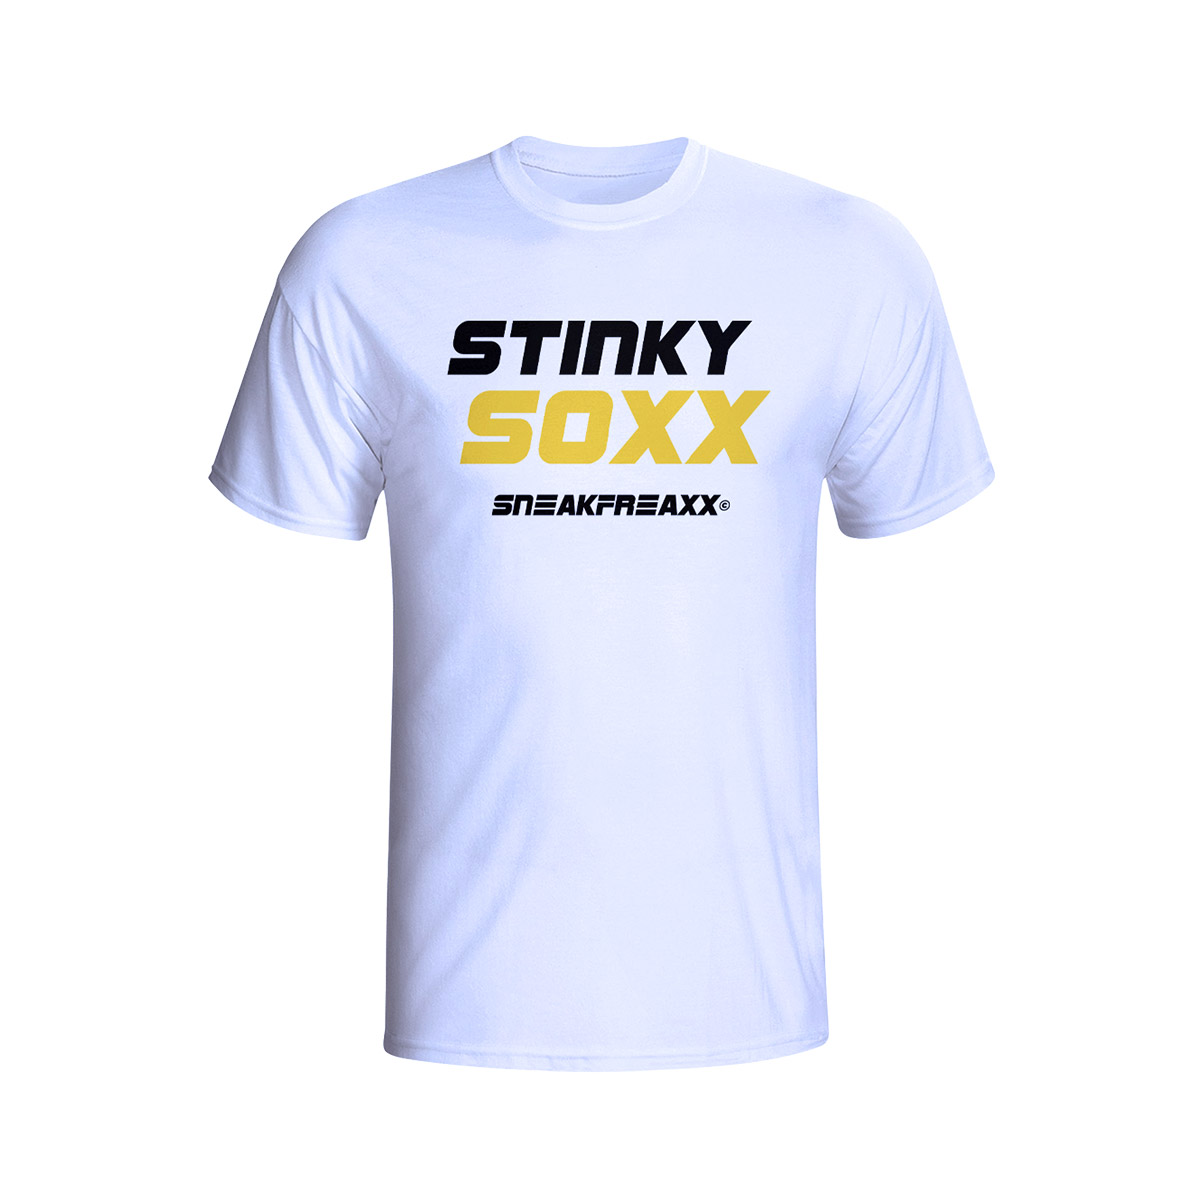 T-SHIRT - STINKY SOXX